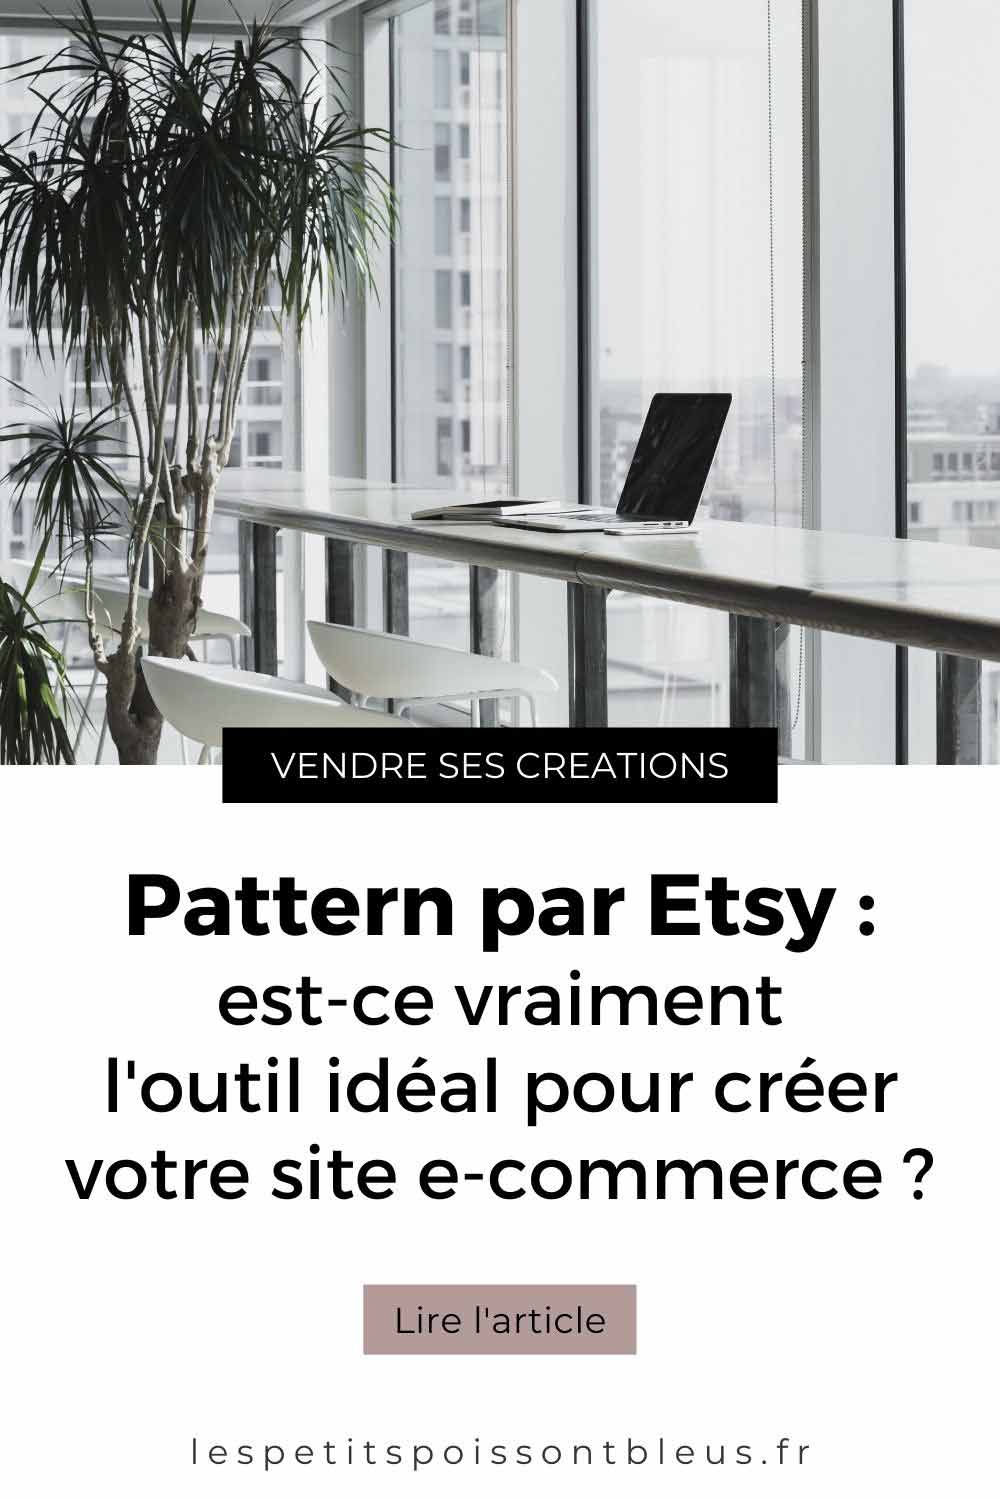 Pattern par Etsy : est-ce vraiment l'outil idéal pour créer votre site e-commerce ?